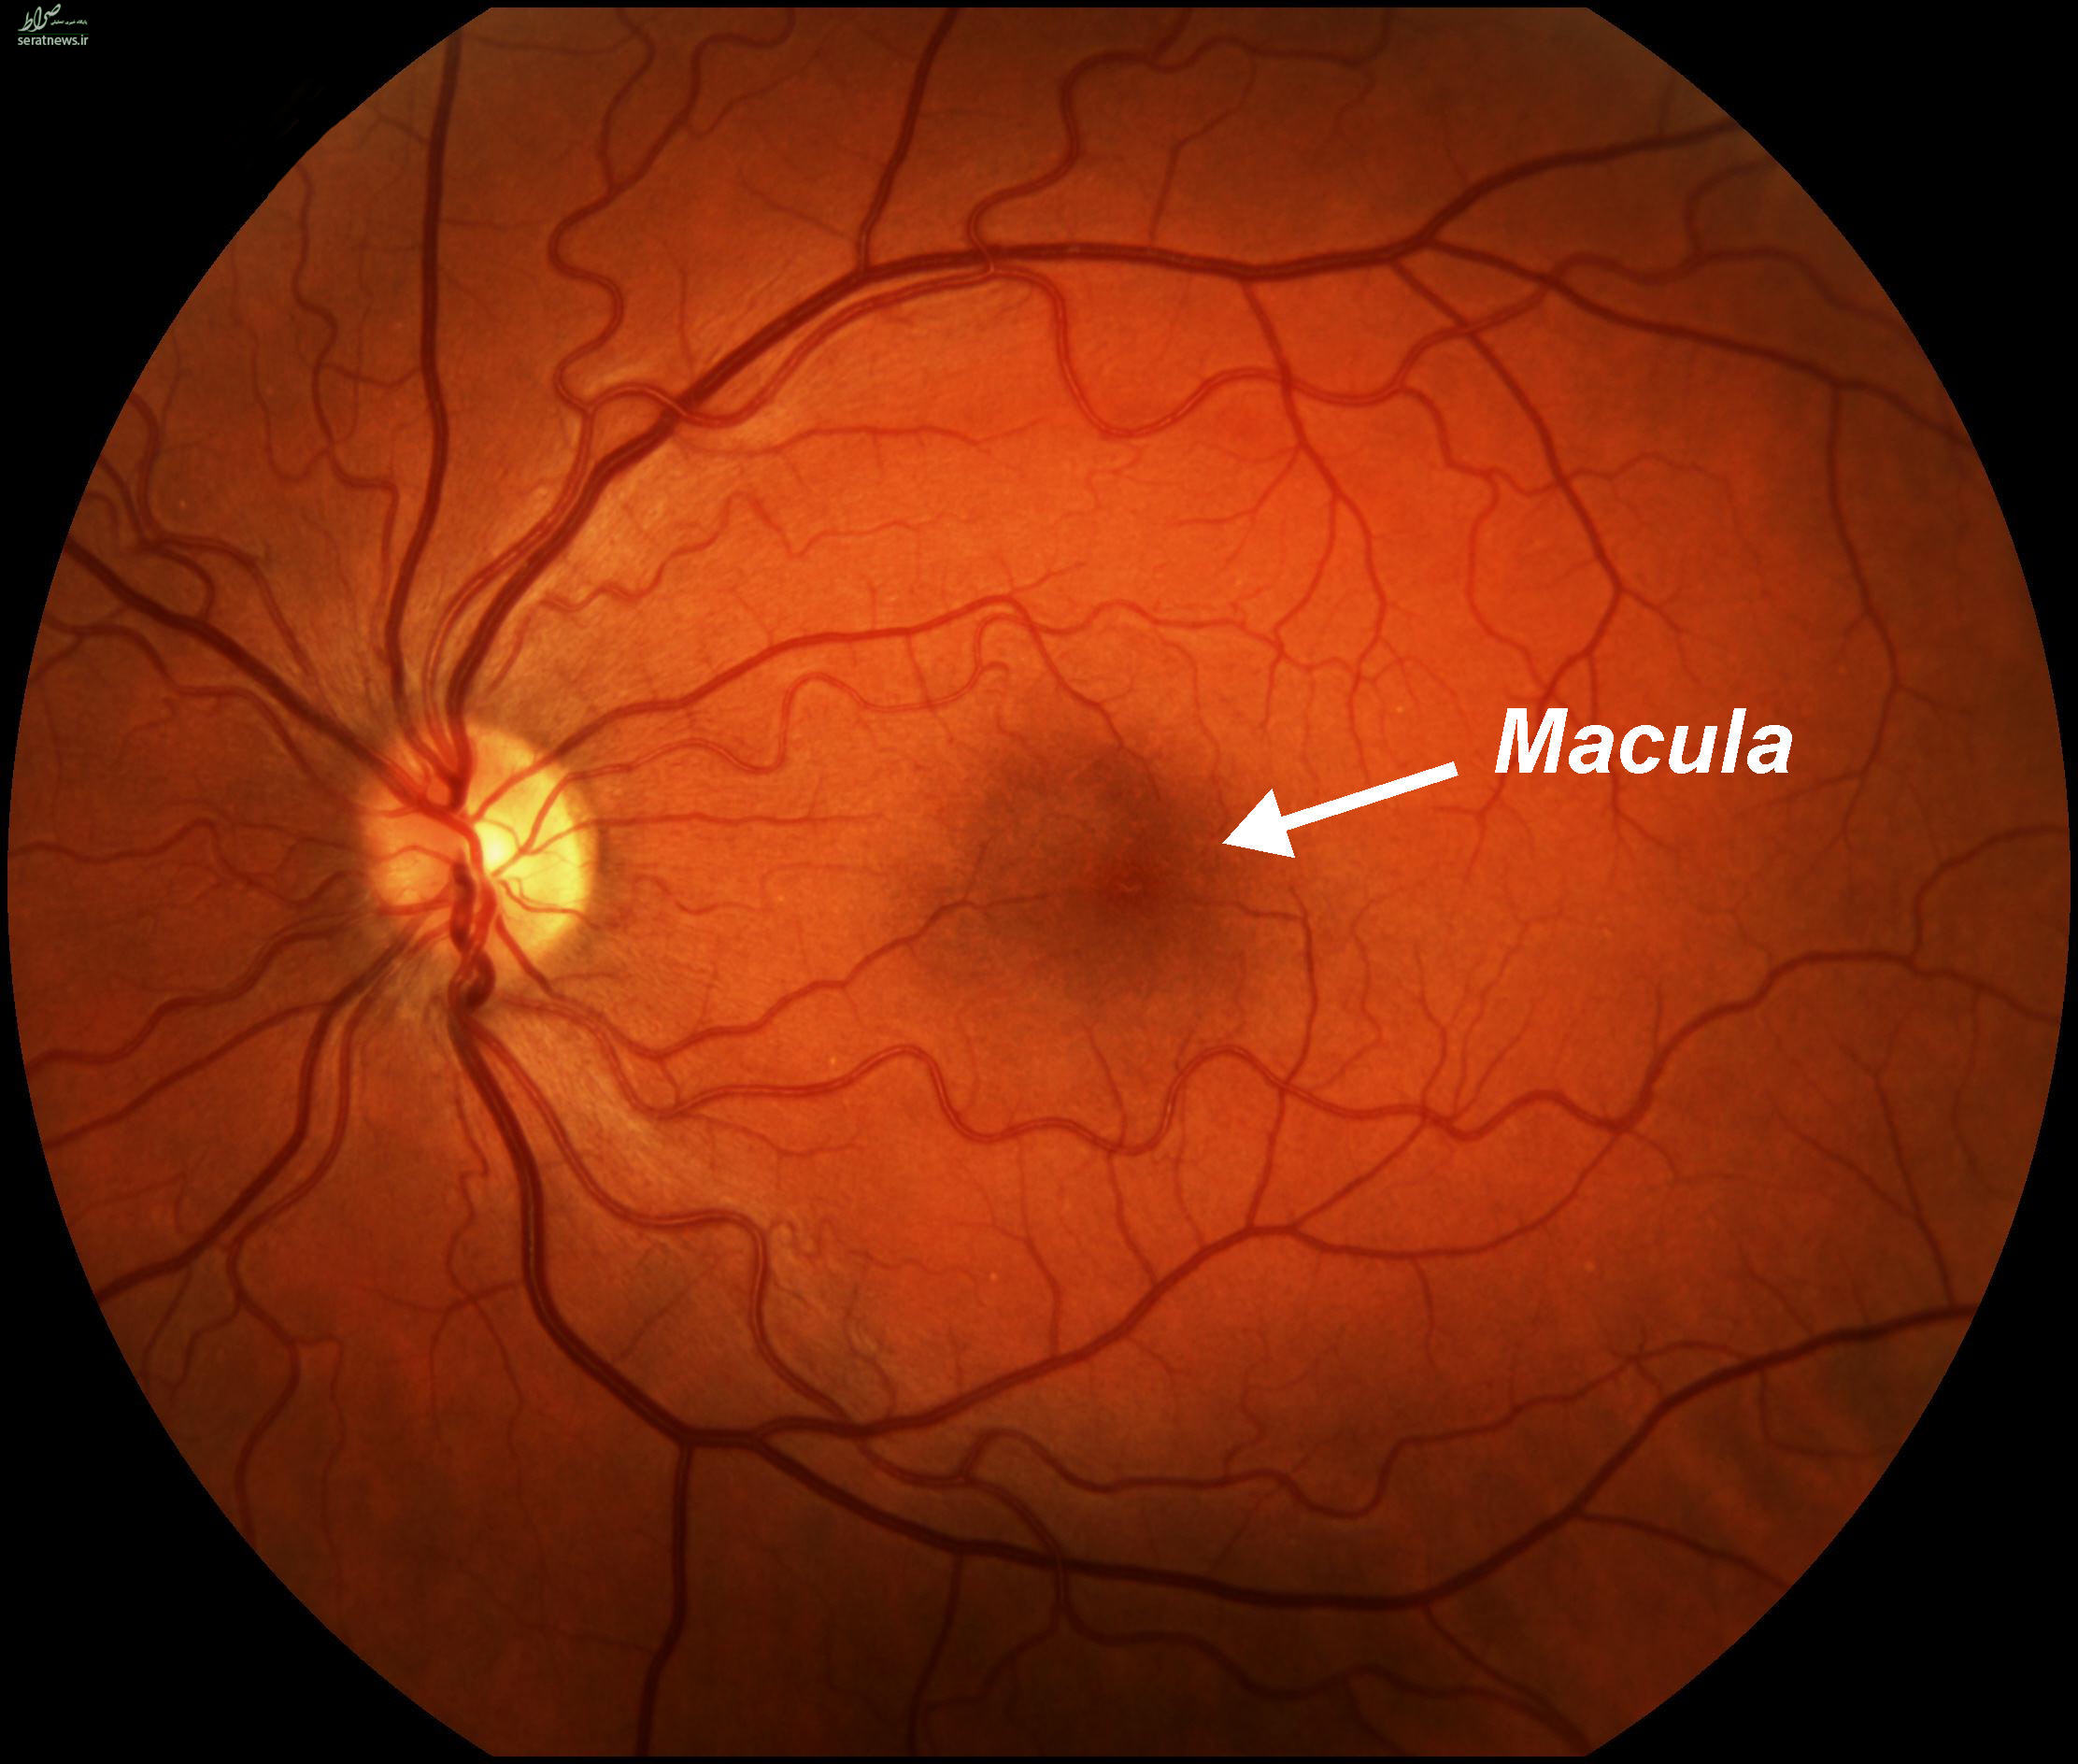 شایع‌ترین بیماری‌های چشمی را بشناسید +تصاویر